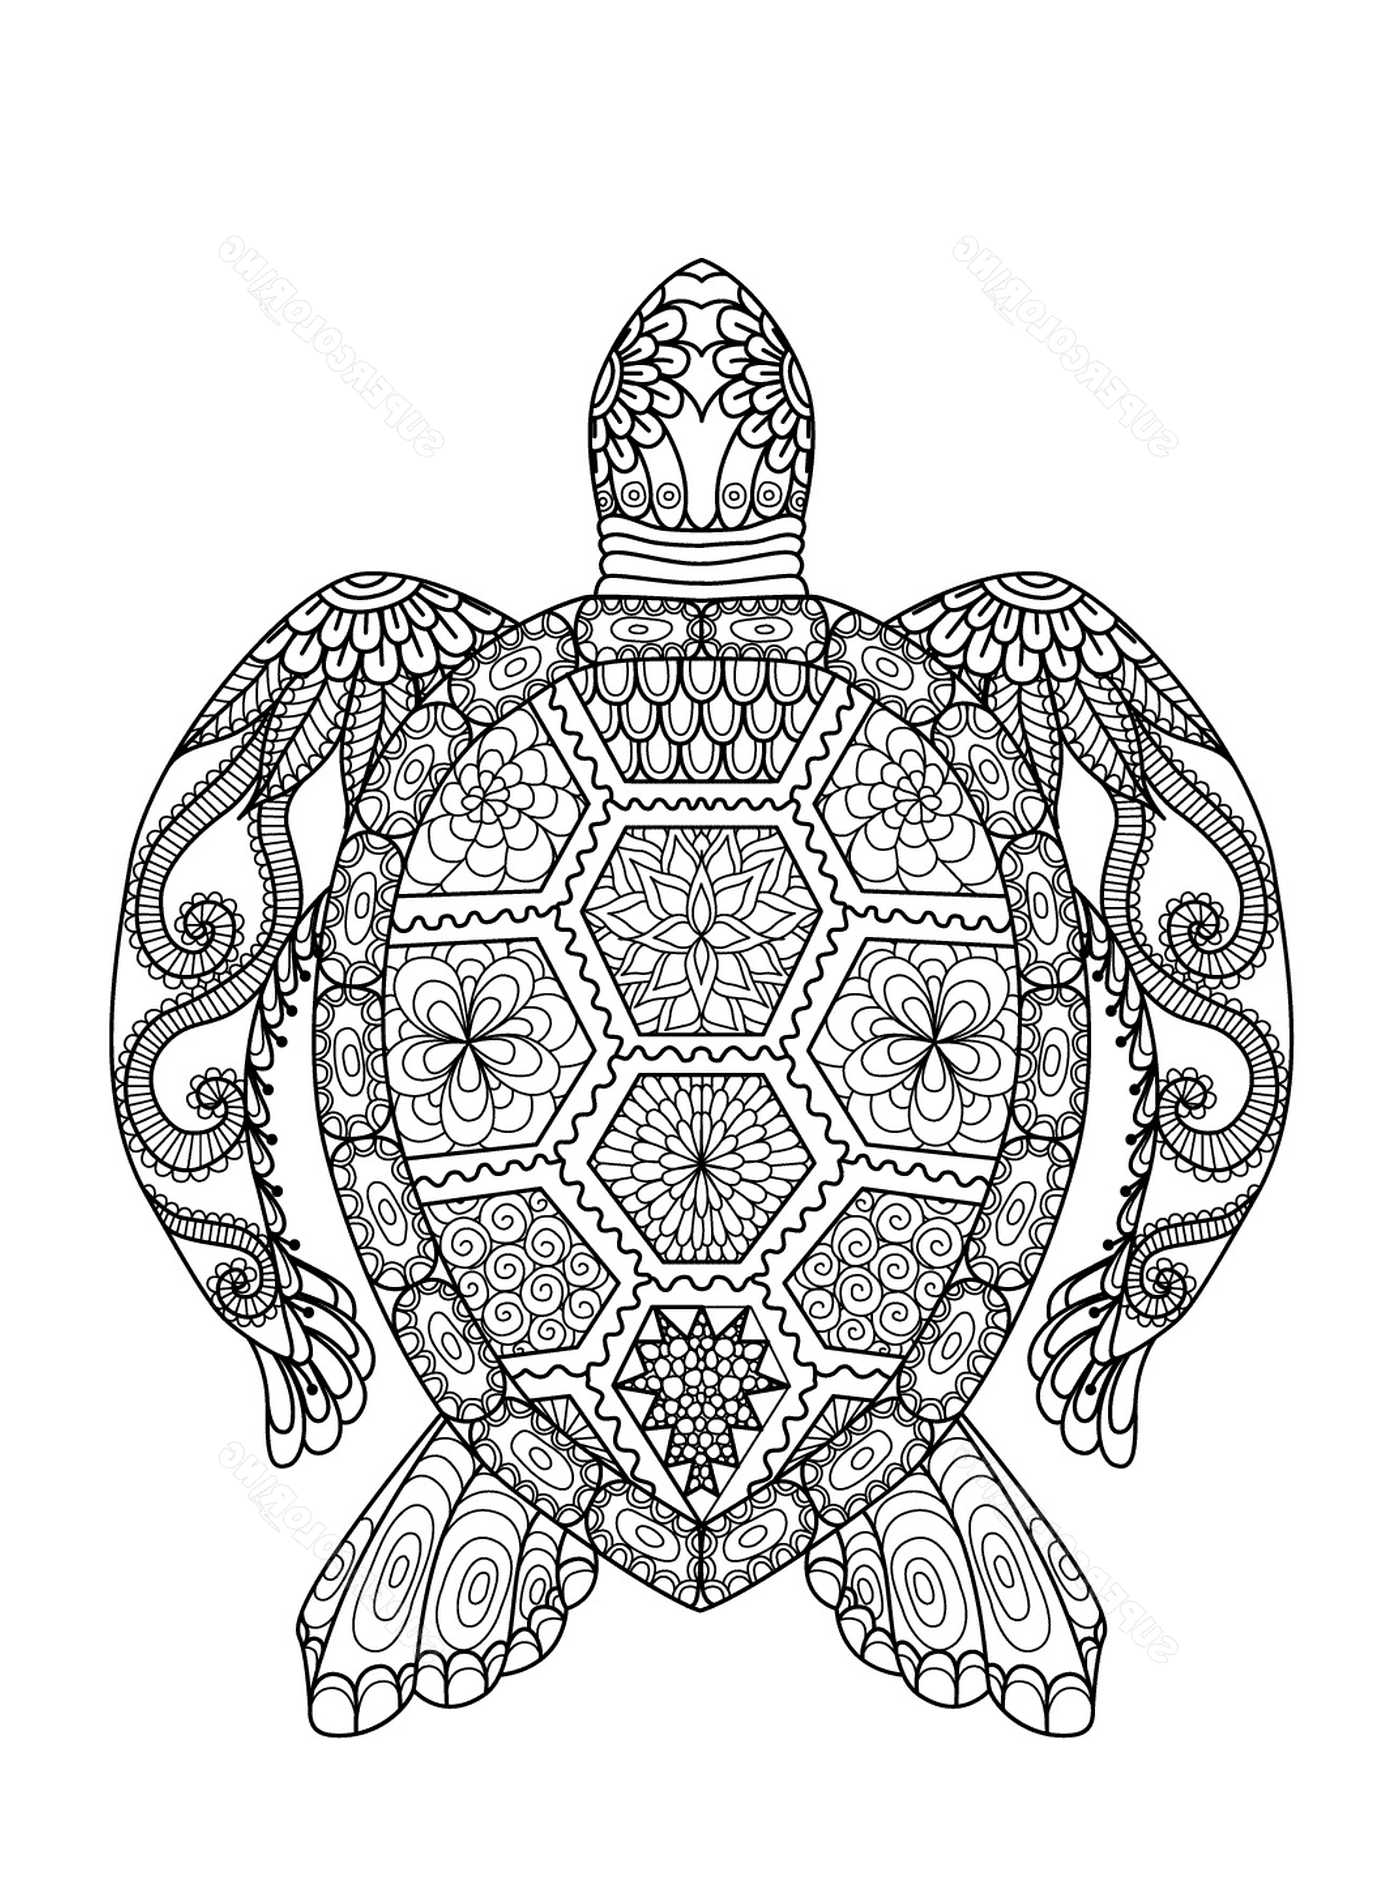  结构精细的海龟 